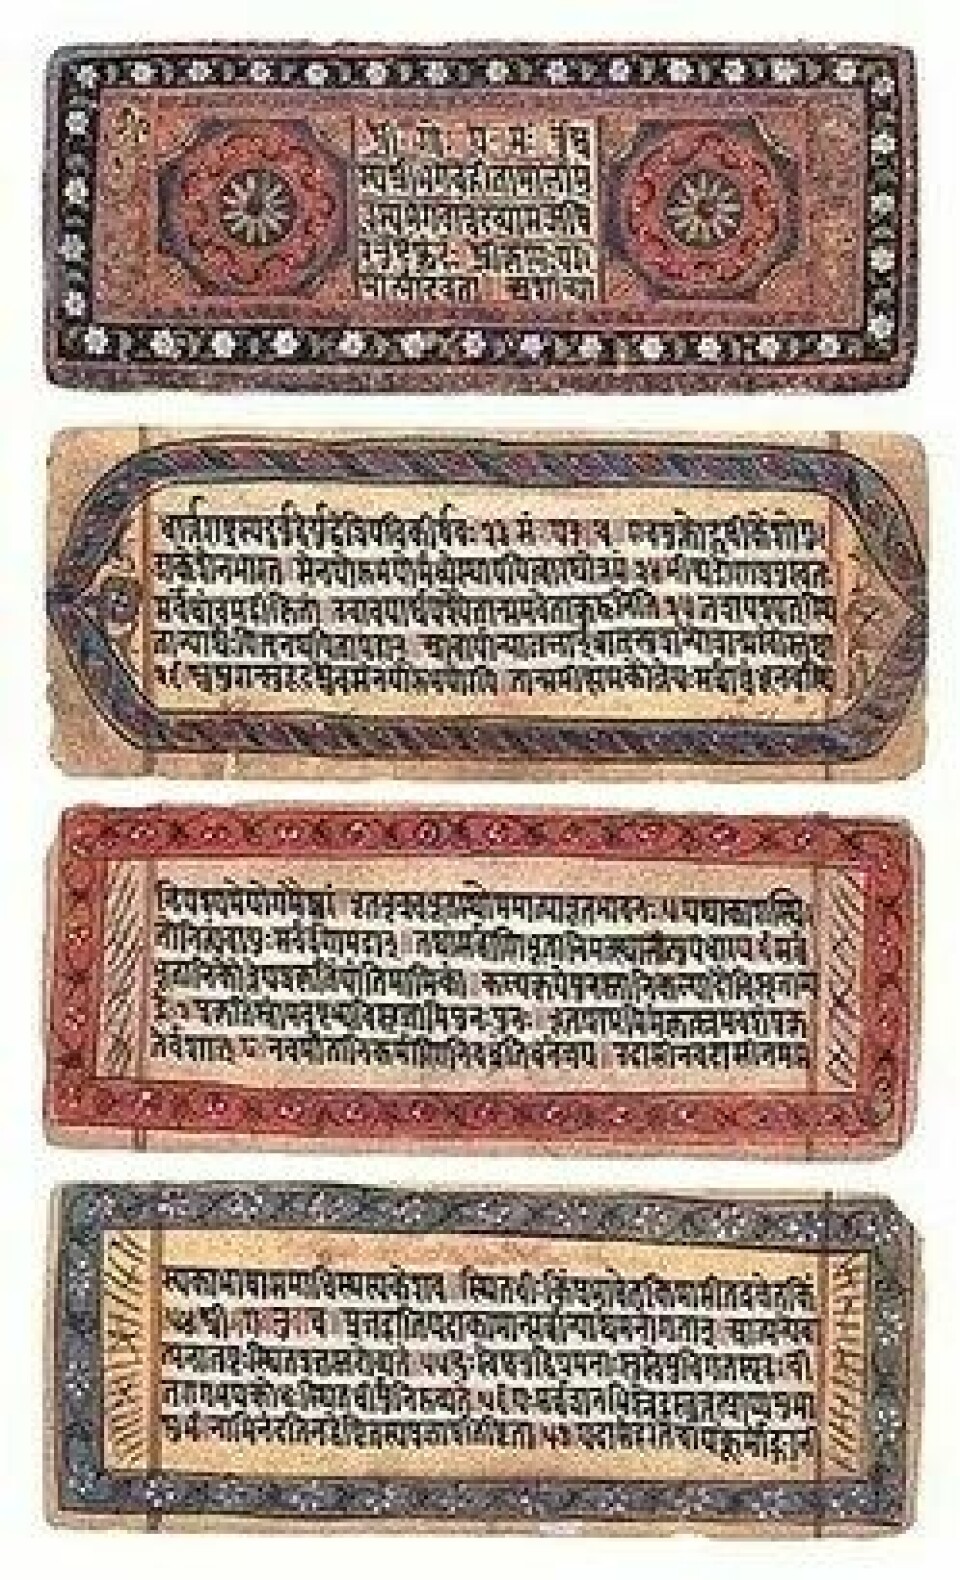 Fra et manuskript av Bhagavad Gita. (Kilde: Wikimedia commons)